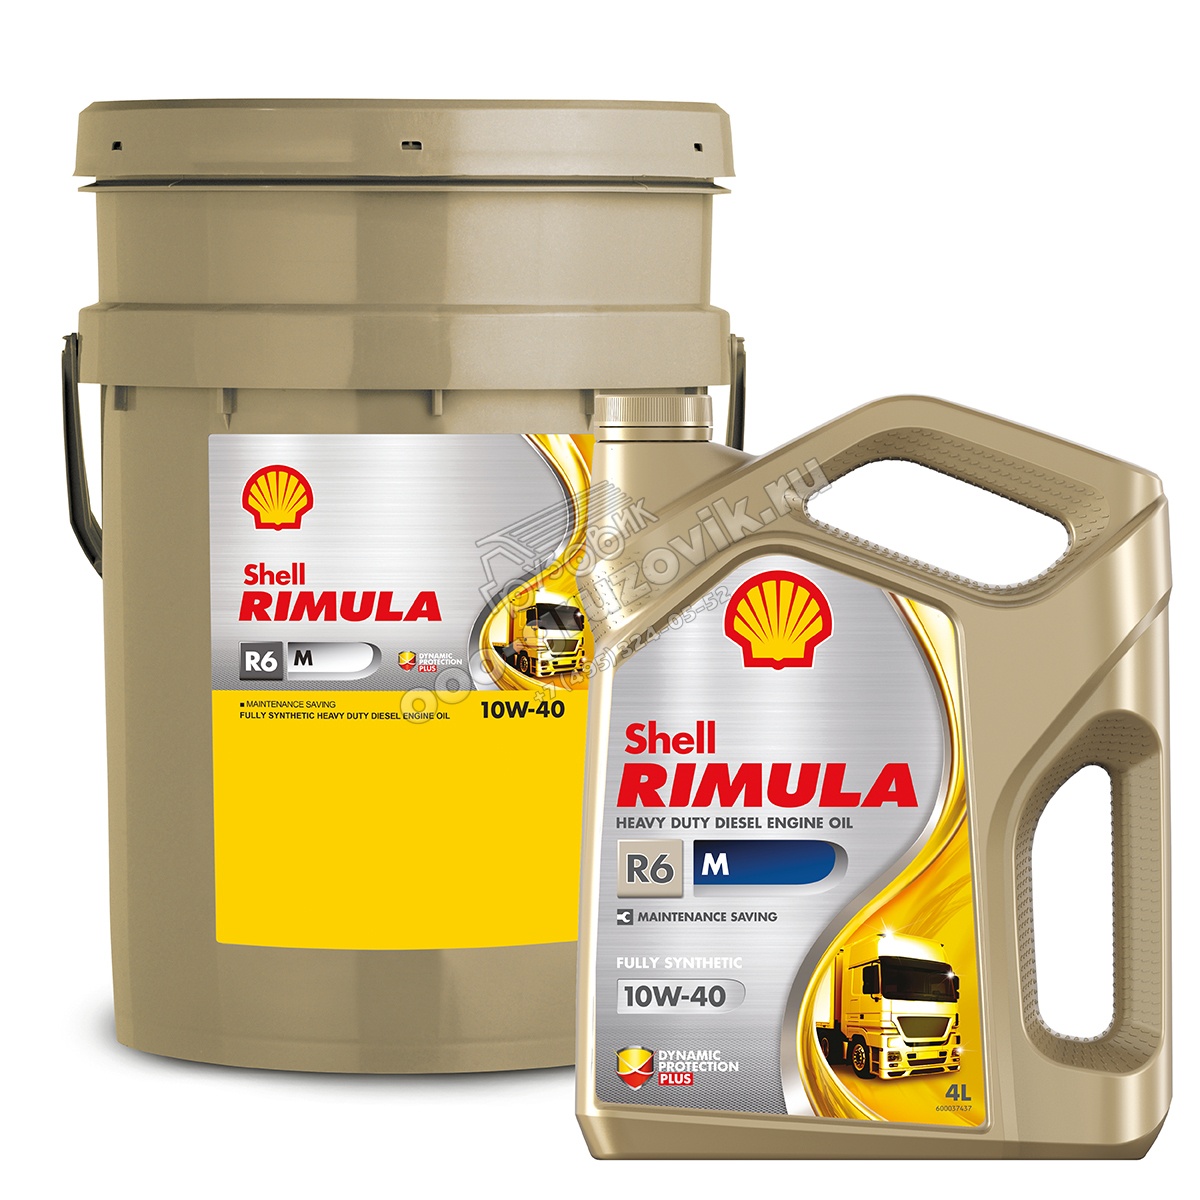 Купить масло моторное м. Shell Rimula r6 m 10w-40. Shell Rimula r6m. Shell Rimula r6 LM 10w-40. Шелл Римула r6m 10w 40.